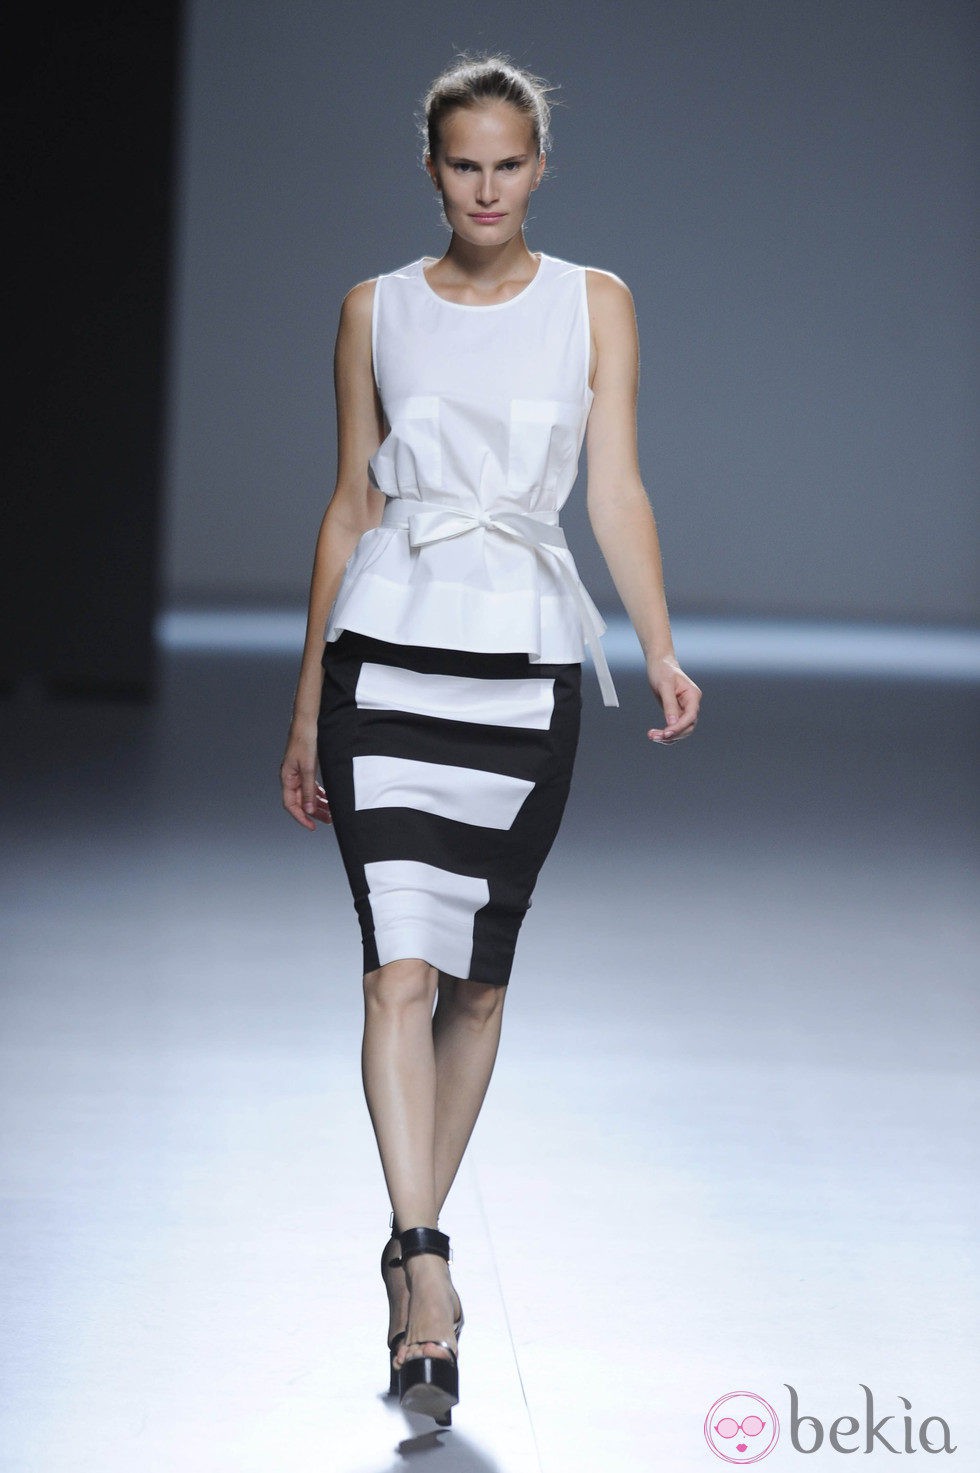 Falda a rayas blanco y negro y blusa blanca de tirantes de la colección primavera/verano 2013 de Ángel Schlesser